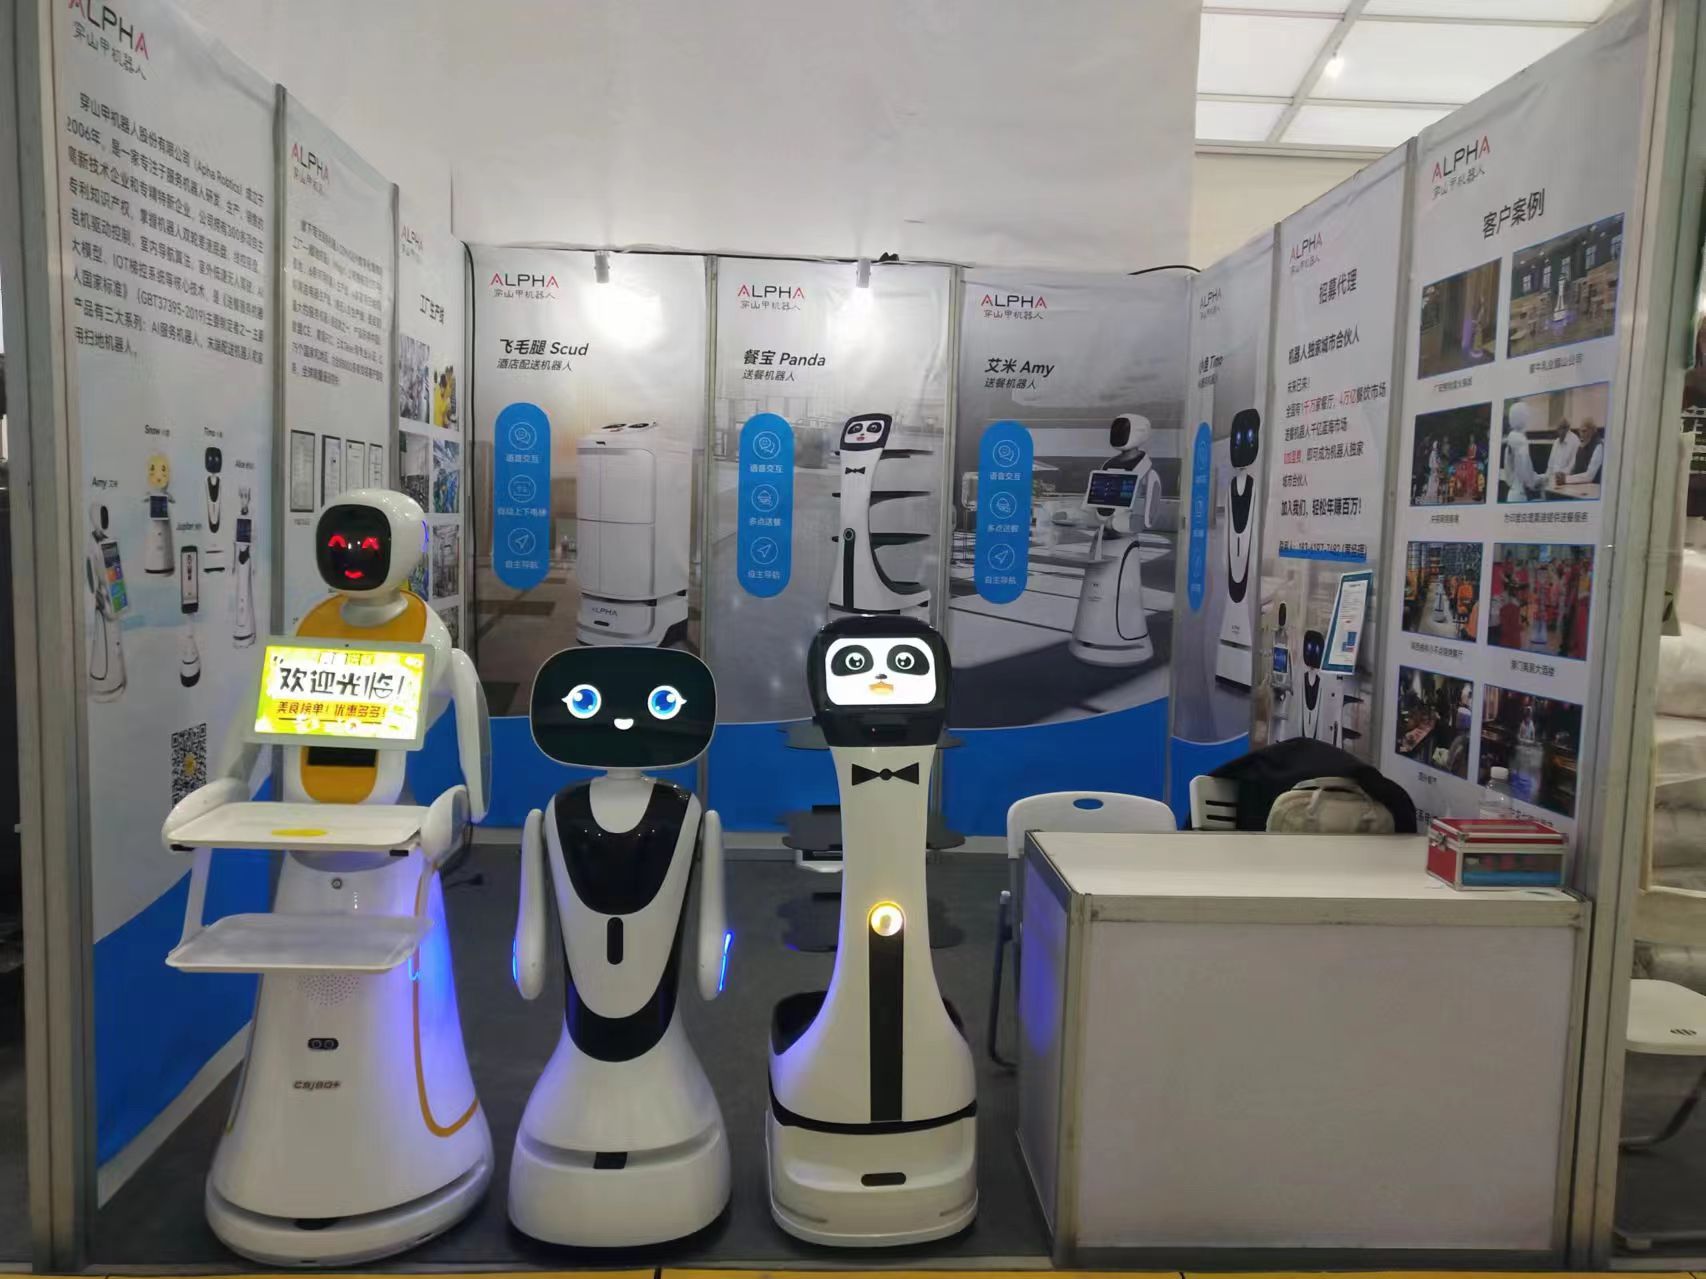 Robotik Suzhou Alpha bersinar di pameran dua bandar, Teknologi Pintar menerajui inovasi industri perhotelan dan katering